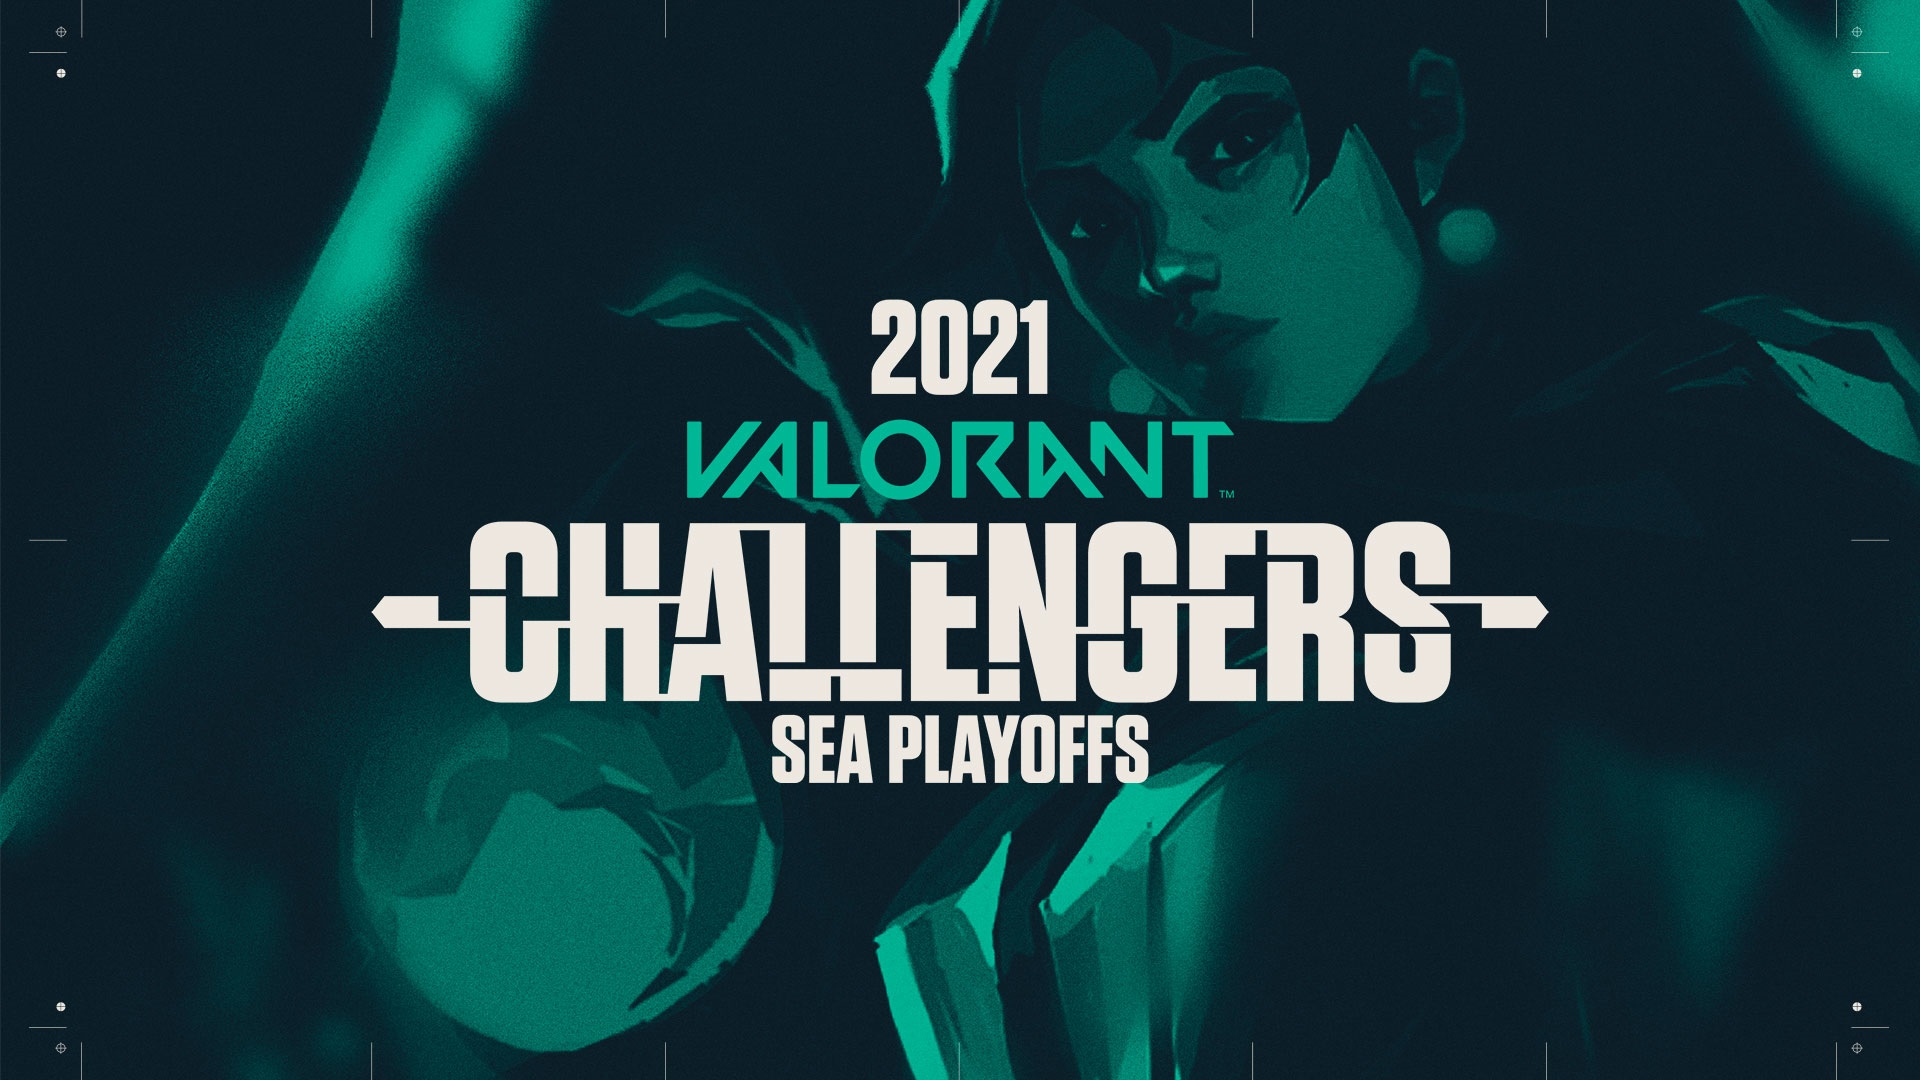 Nữ tuyển thủ SEA chính thức có thể tham dự VCT Game Changers